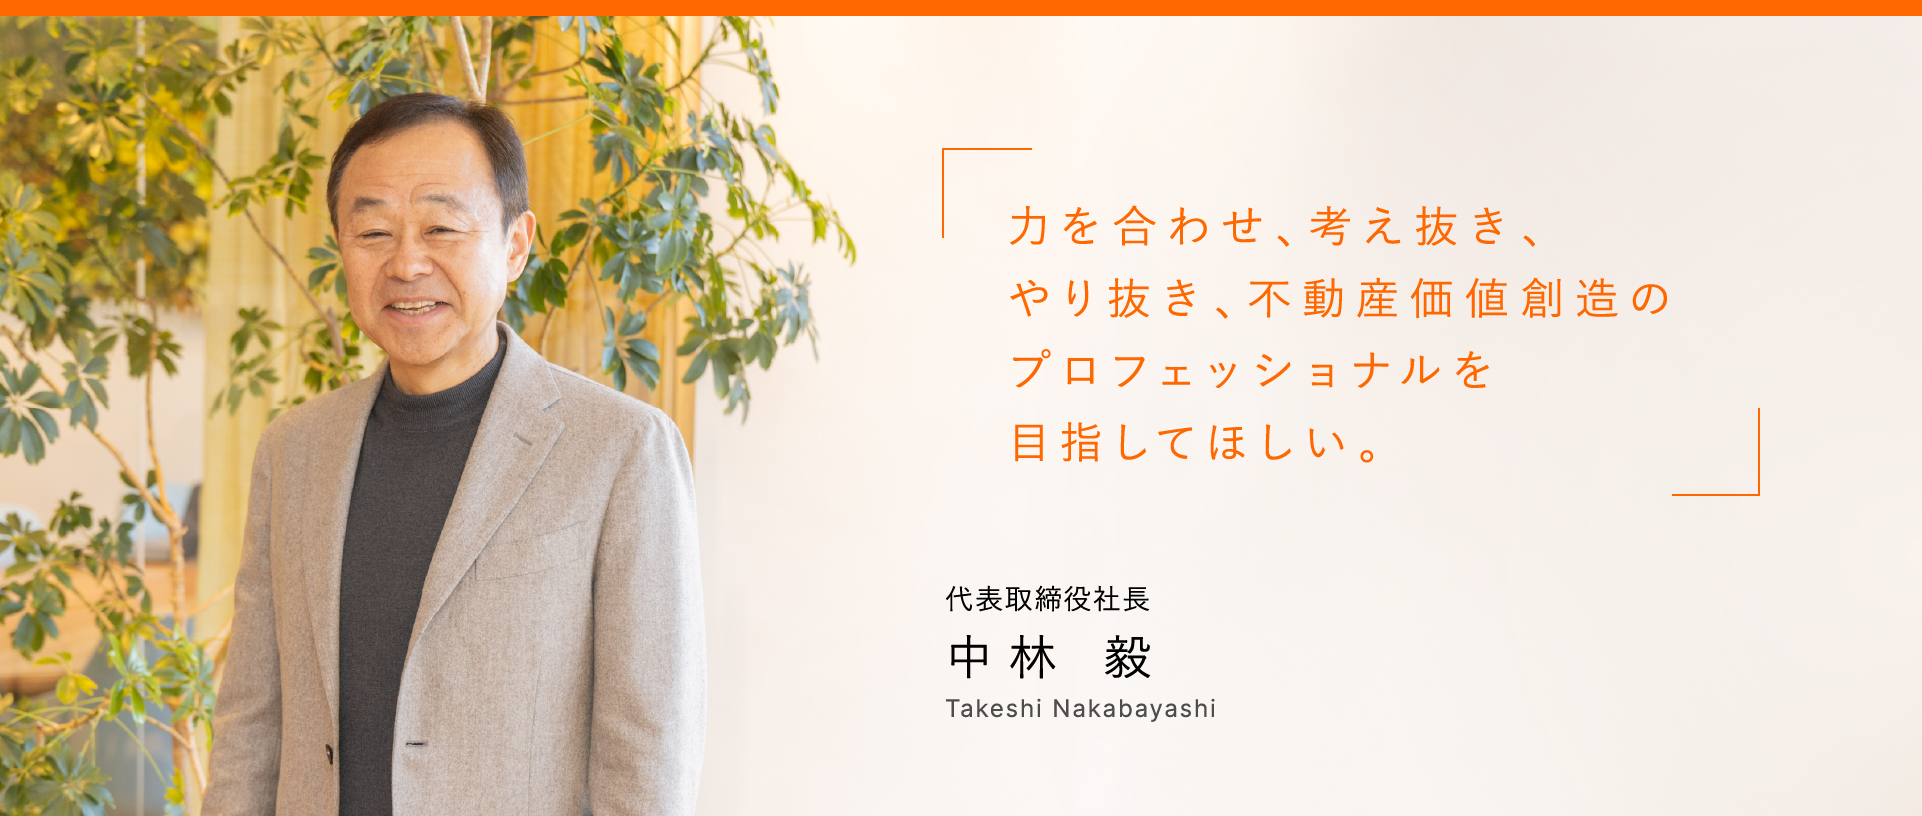 力を合わせ、考え抜き、やり抜き、不動産価値創造のプロフェッショナルを目指してほしい。 代表取締役社長 中林 毅 Takeshi Nakabayashi